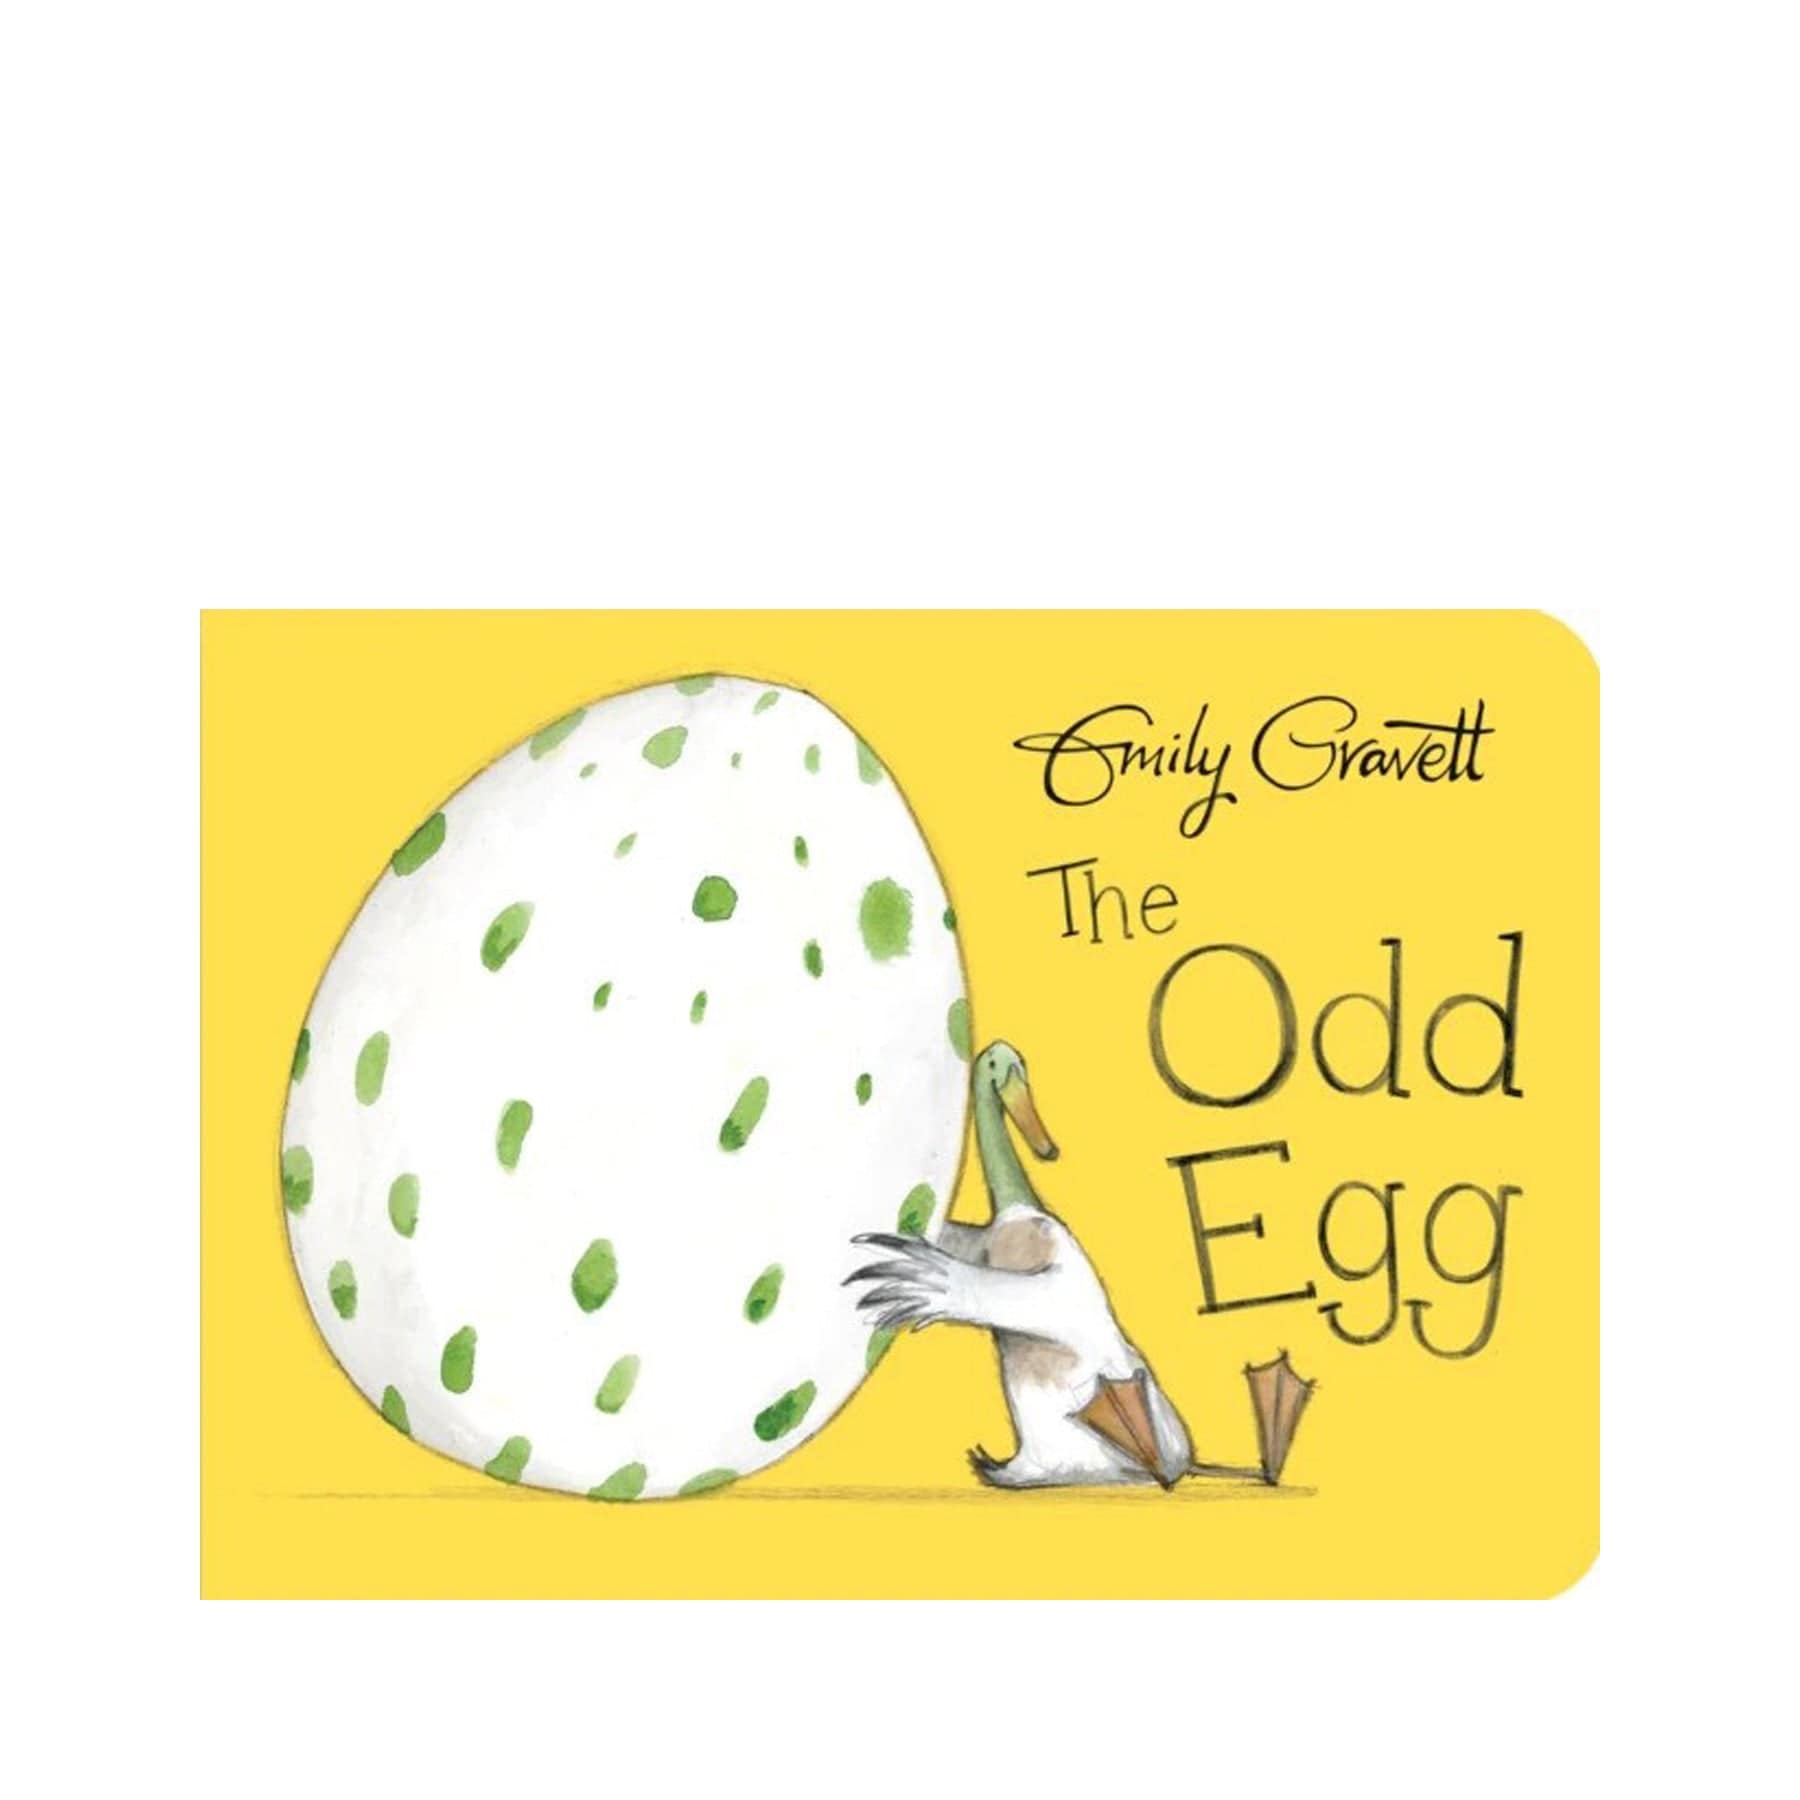 The odd egg